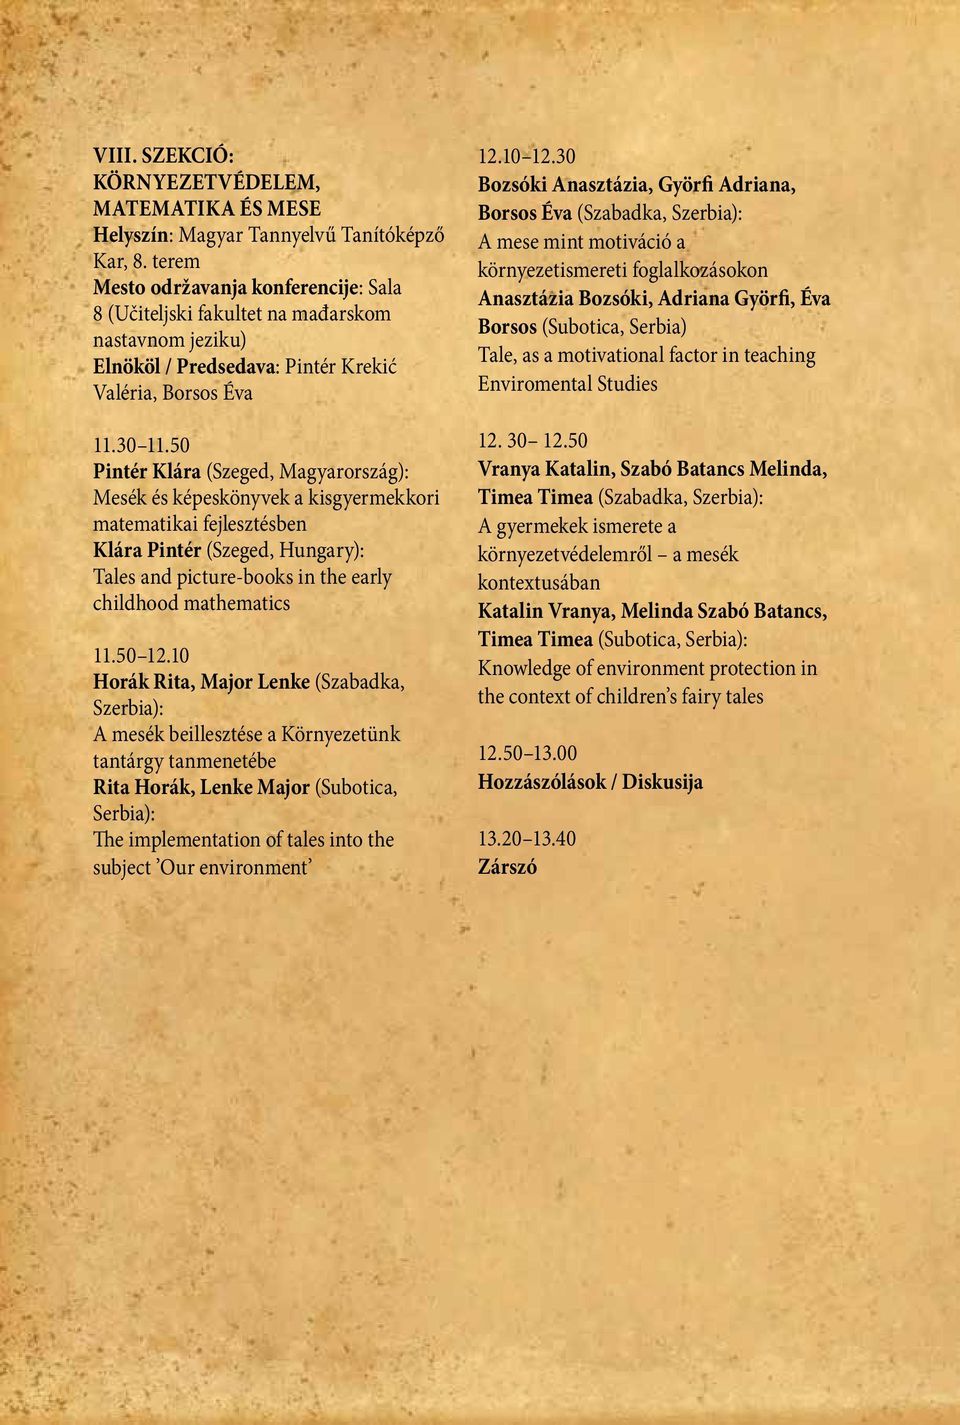 50 Pintér Klára (Szeged, Magyarország): Mesék és képeskönyvek a kisgyermekkori matematikai fejlesztésben Klára Pintér (Szeged, Hungary): Tales and picture-books in the early childhood mathematics 11.